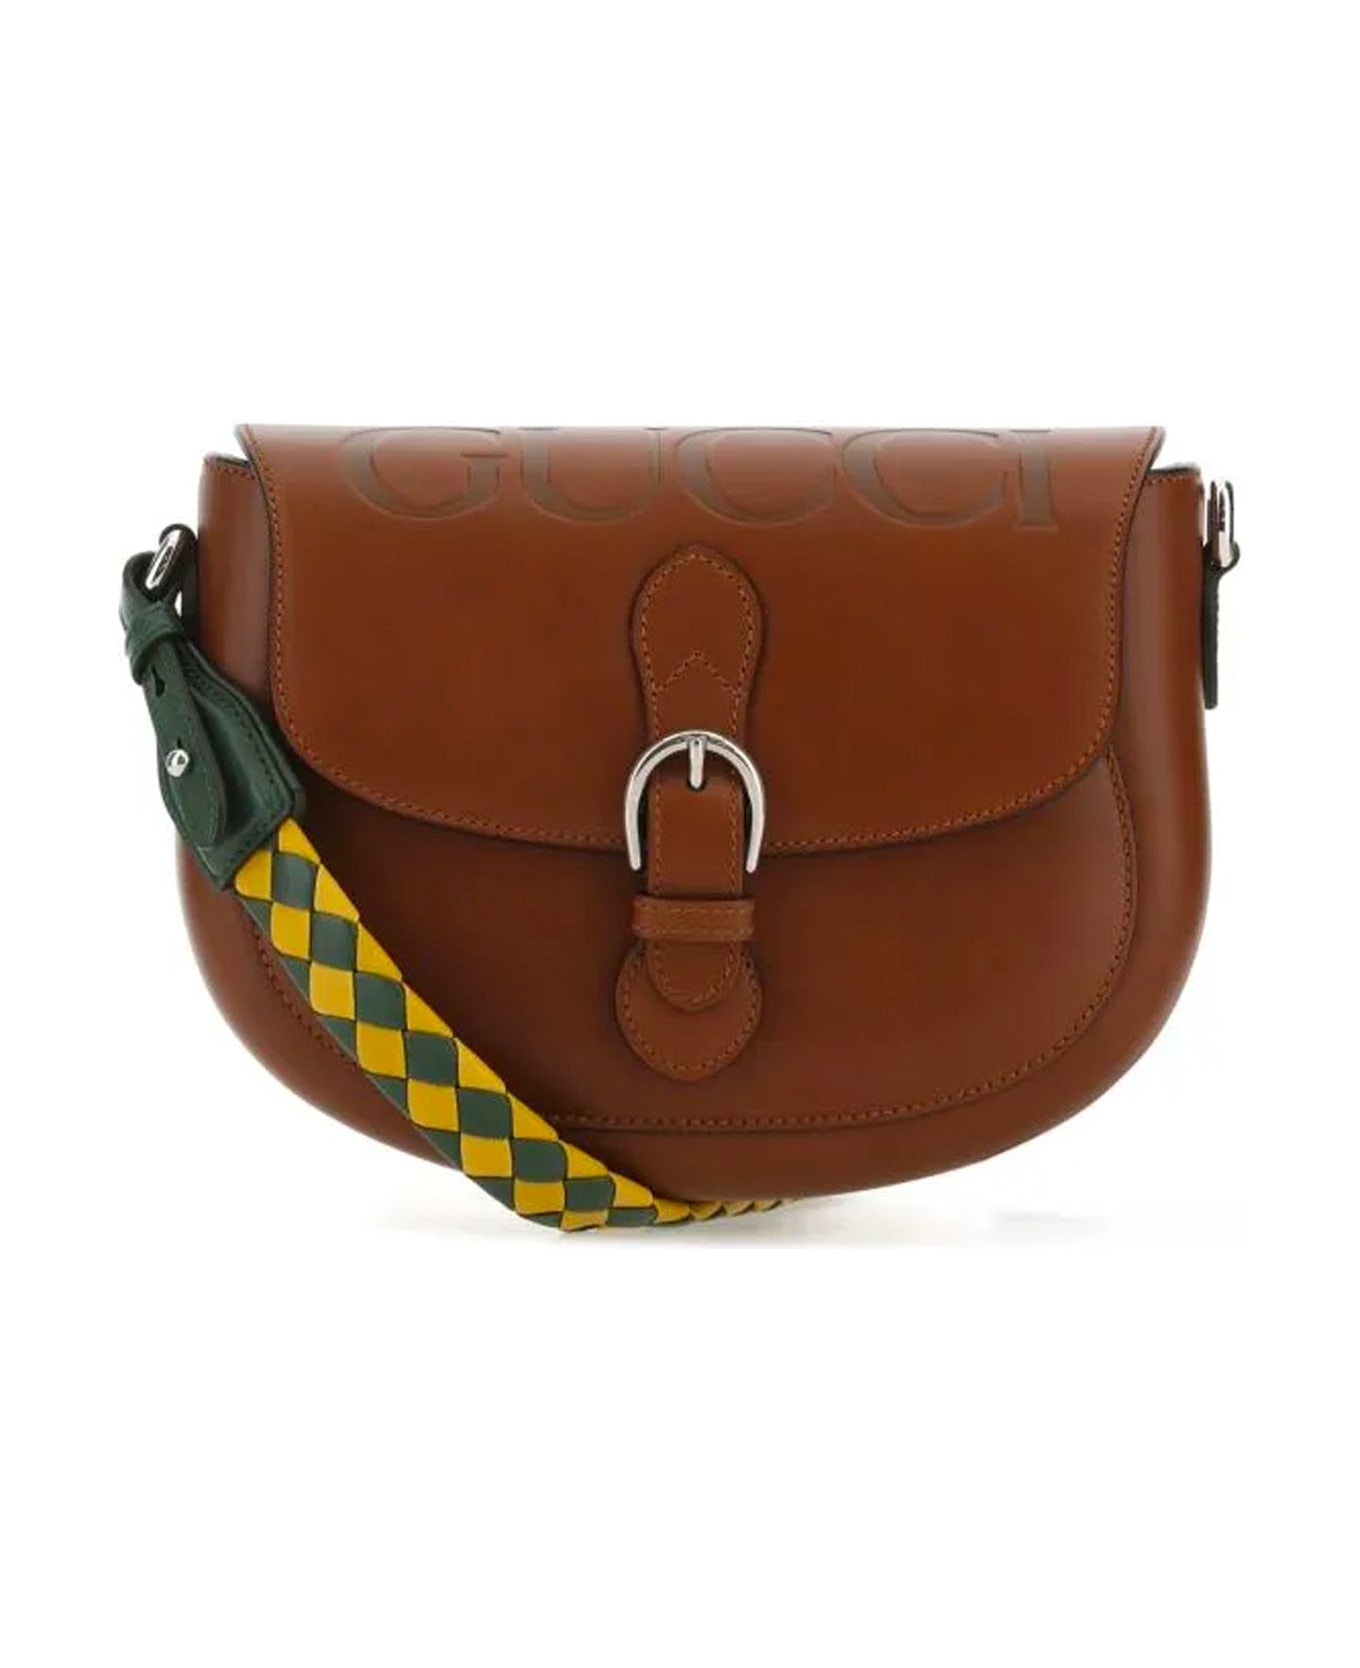 Gucci Leather Shoulder Bag - Brown